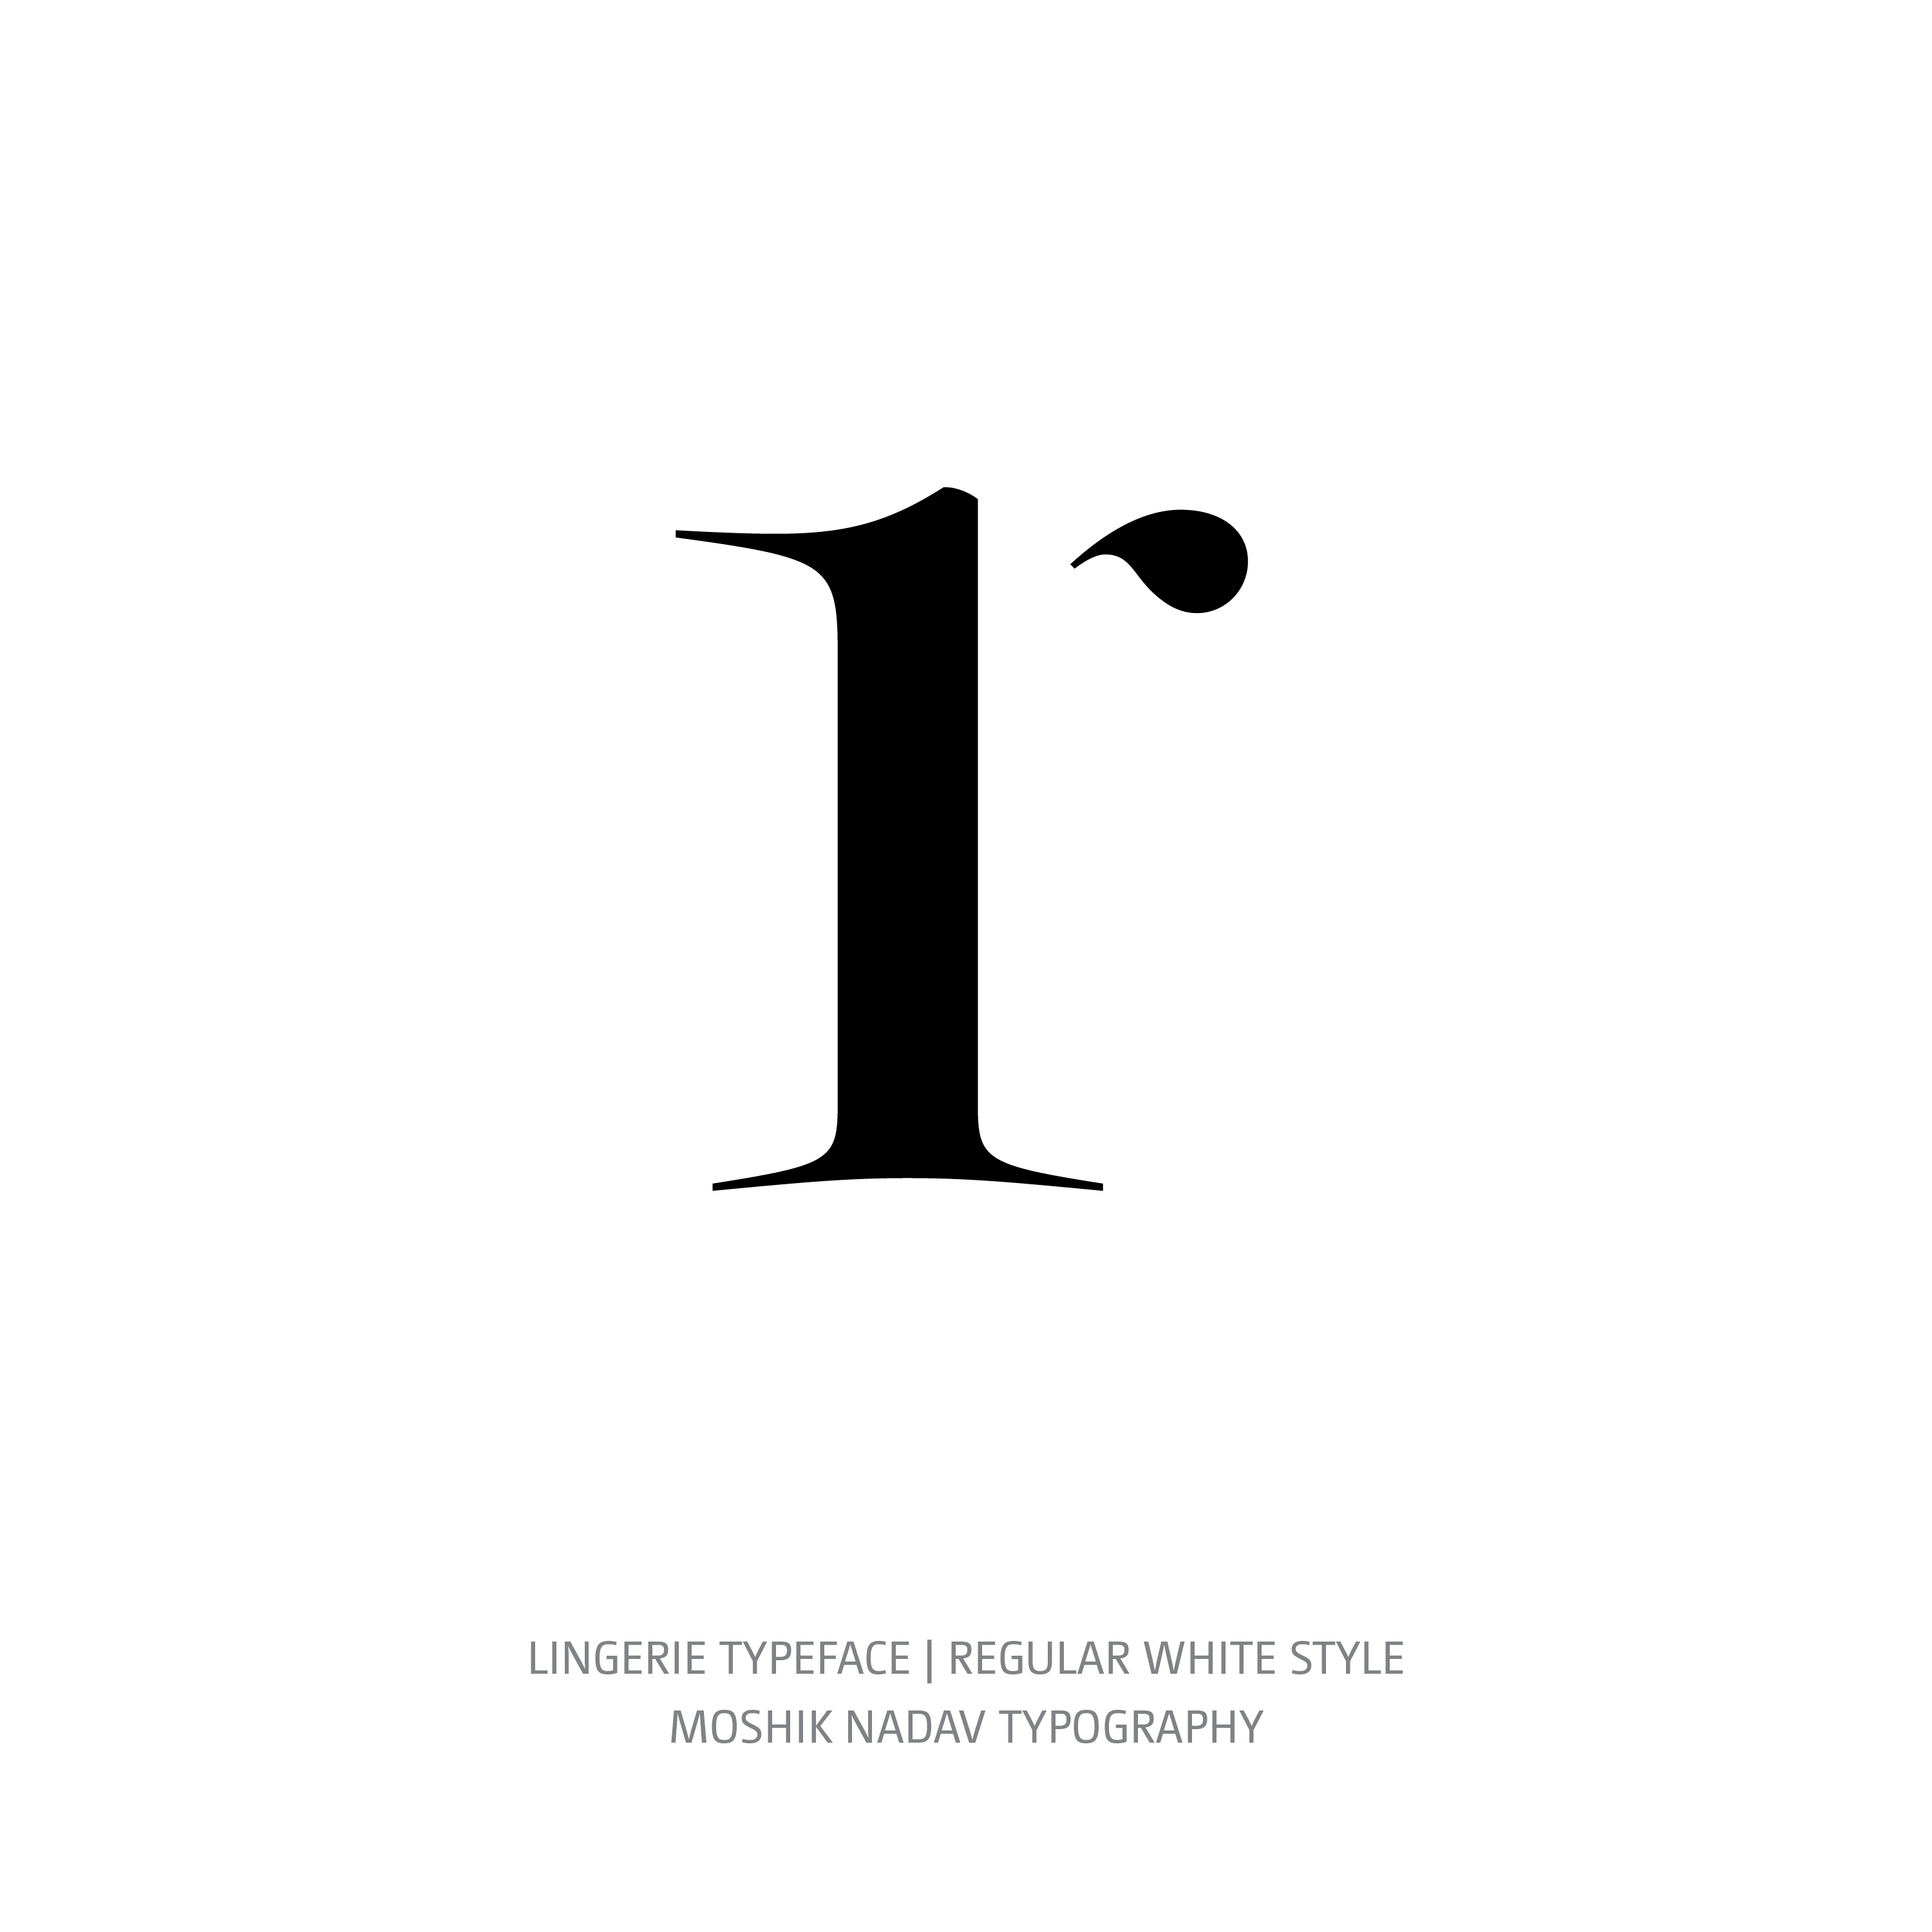 Lingerie Typeface Regular White r